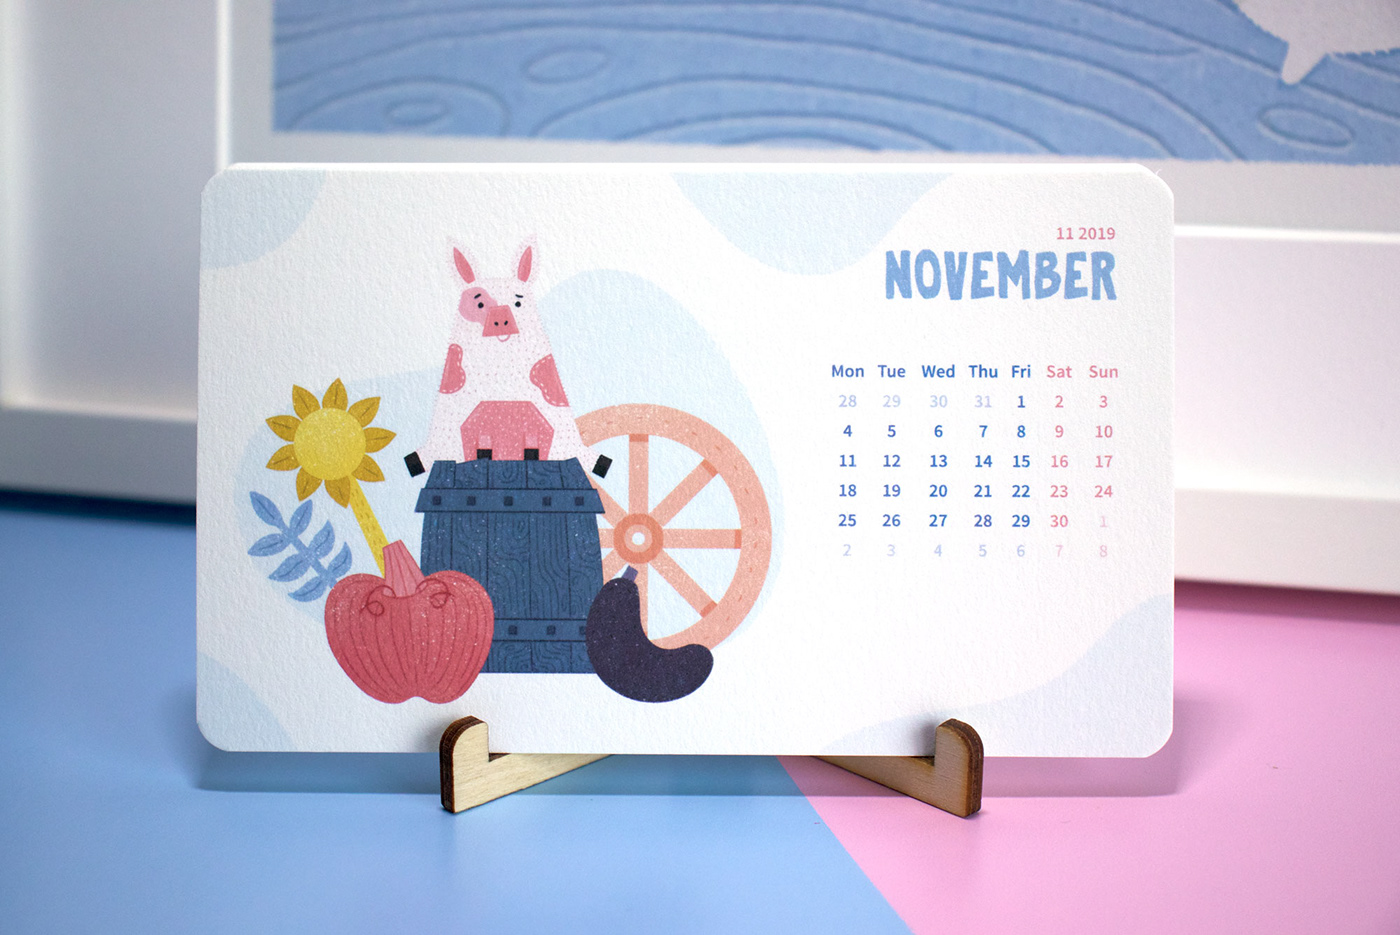 calendar new year calendar 2019 product design  pig art ILLUSTRATION  desk calendar pig year